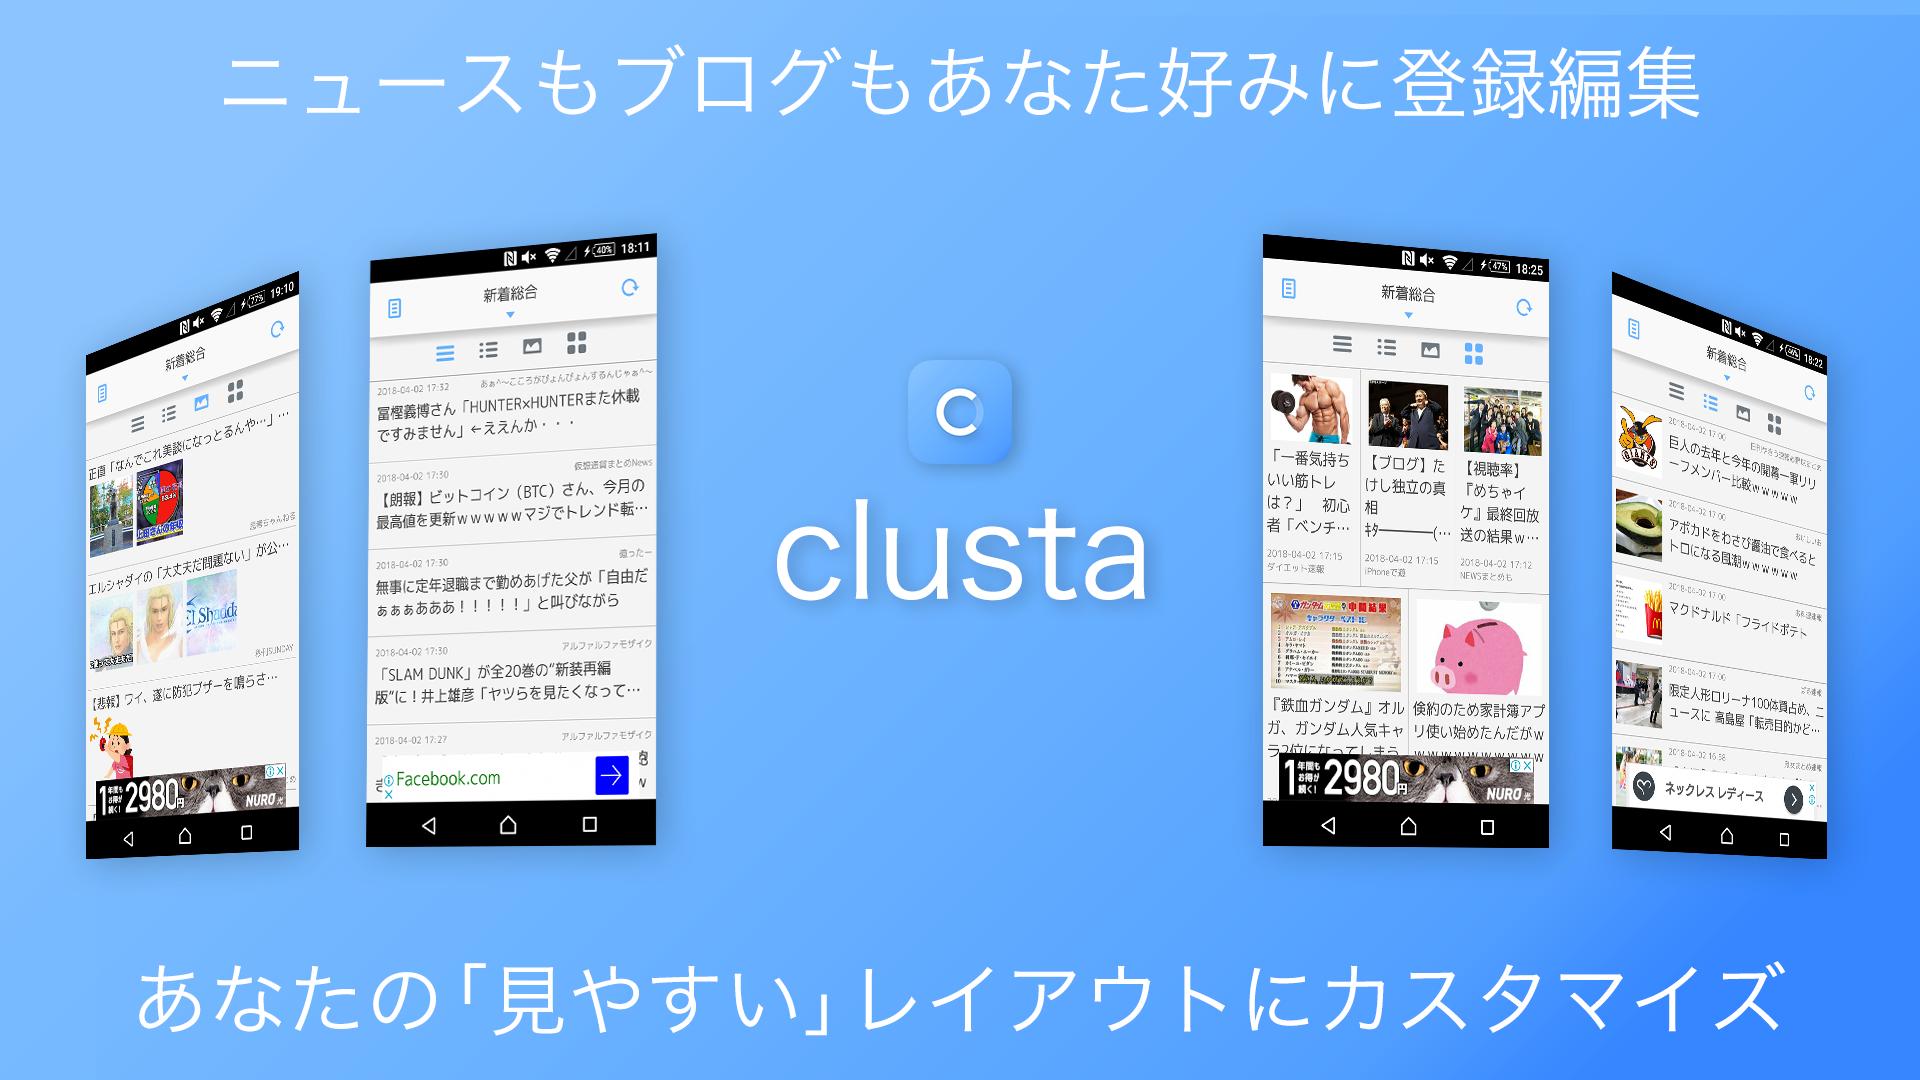 究極の2chまとめ Clusta 無料で読み放題の2ちゃんねるニュース アプリ For Android Apk Download